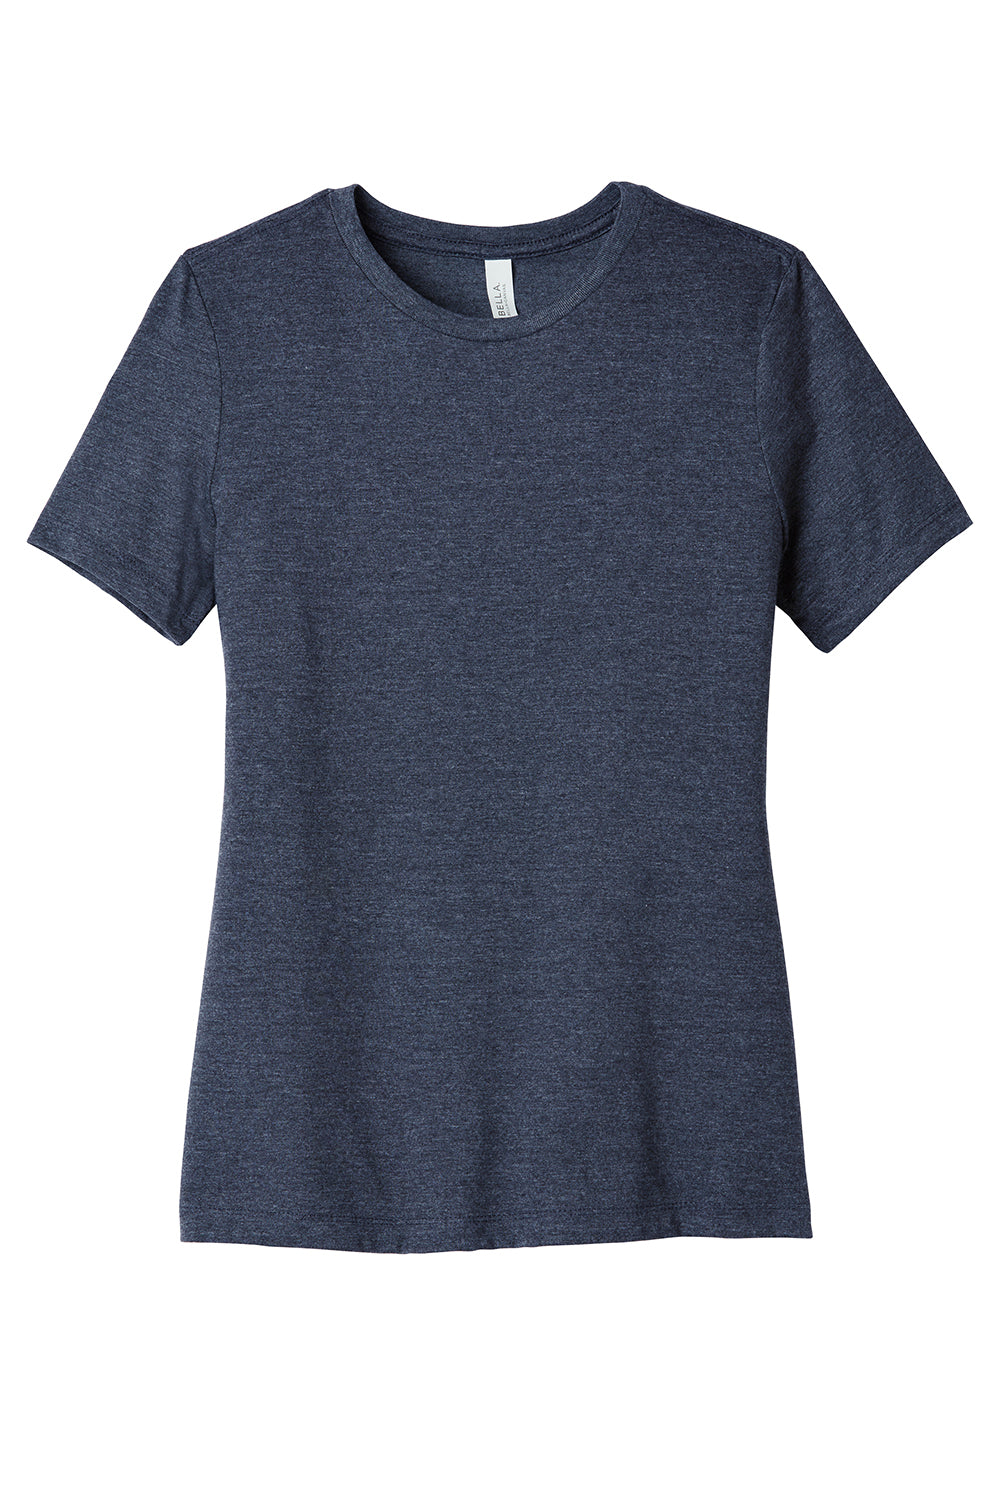 Bella + Canvas BC6400CVC/6400CVC Womens CVC Short Sleeve Crewneck T-Shirt Heather Navy Blue Flat Front